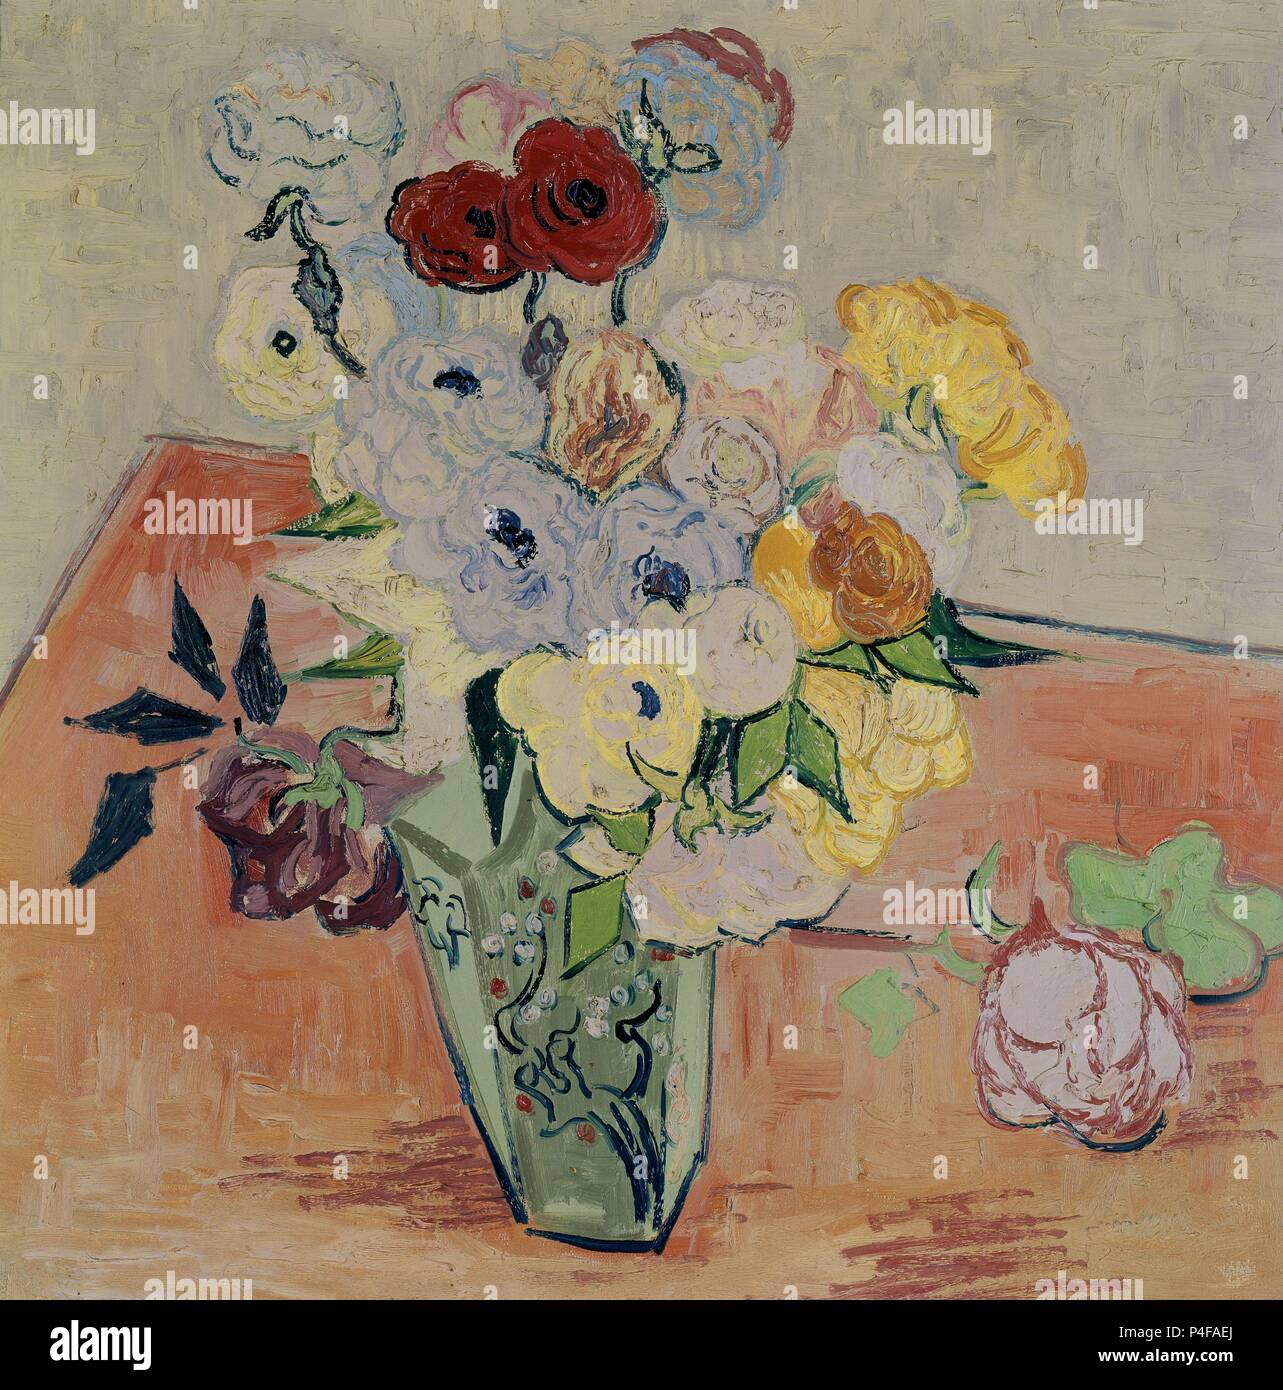 Rosen und Anemonen - 1890 - 51,7 x 52 cm - Öl auf Leinwand. Autor: Vincent van Gogh (1853-1890). Lage: Musee D'Orsay, Frankreich. Auch als: ROSAS Y ANEMONAS bekannt. Stockfoto